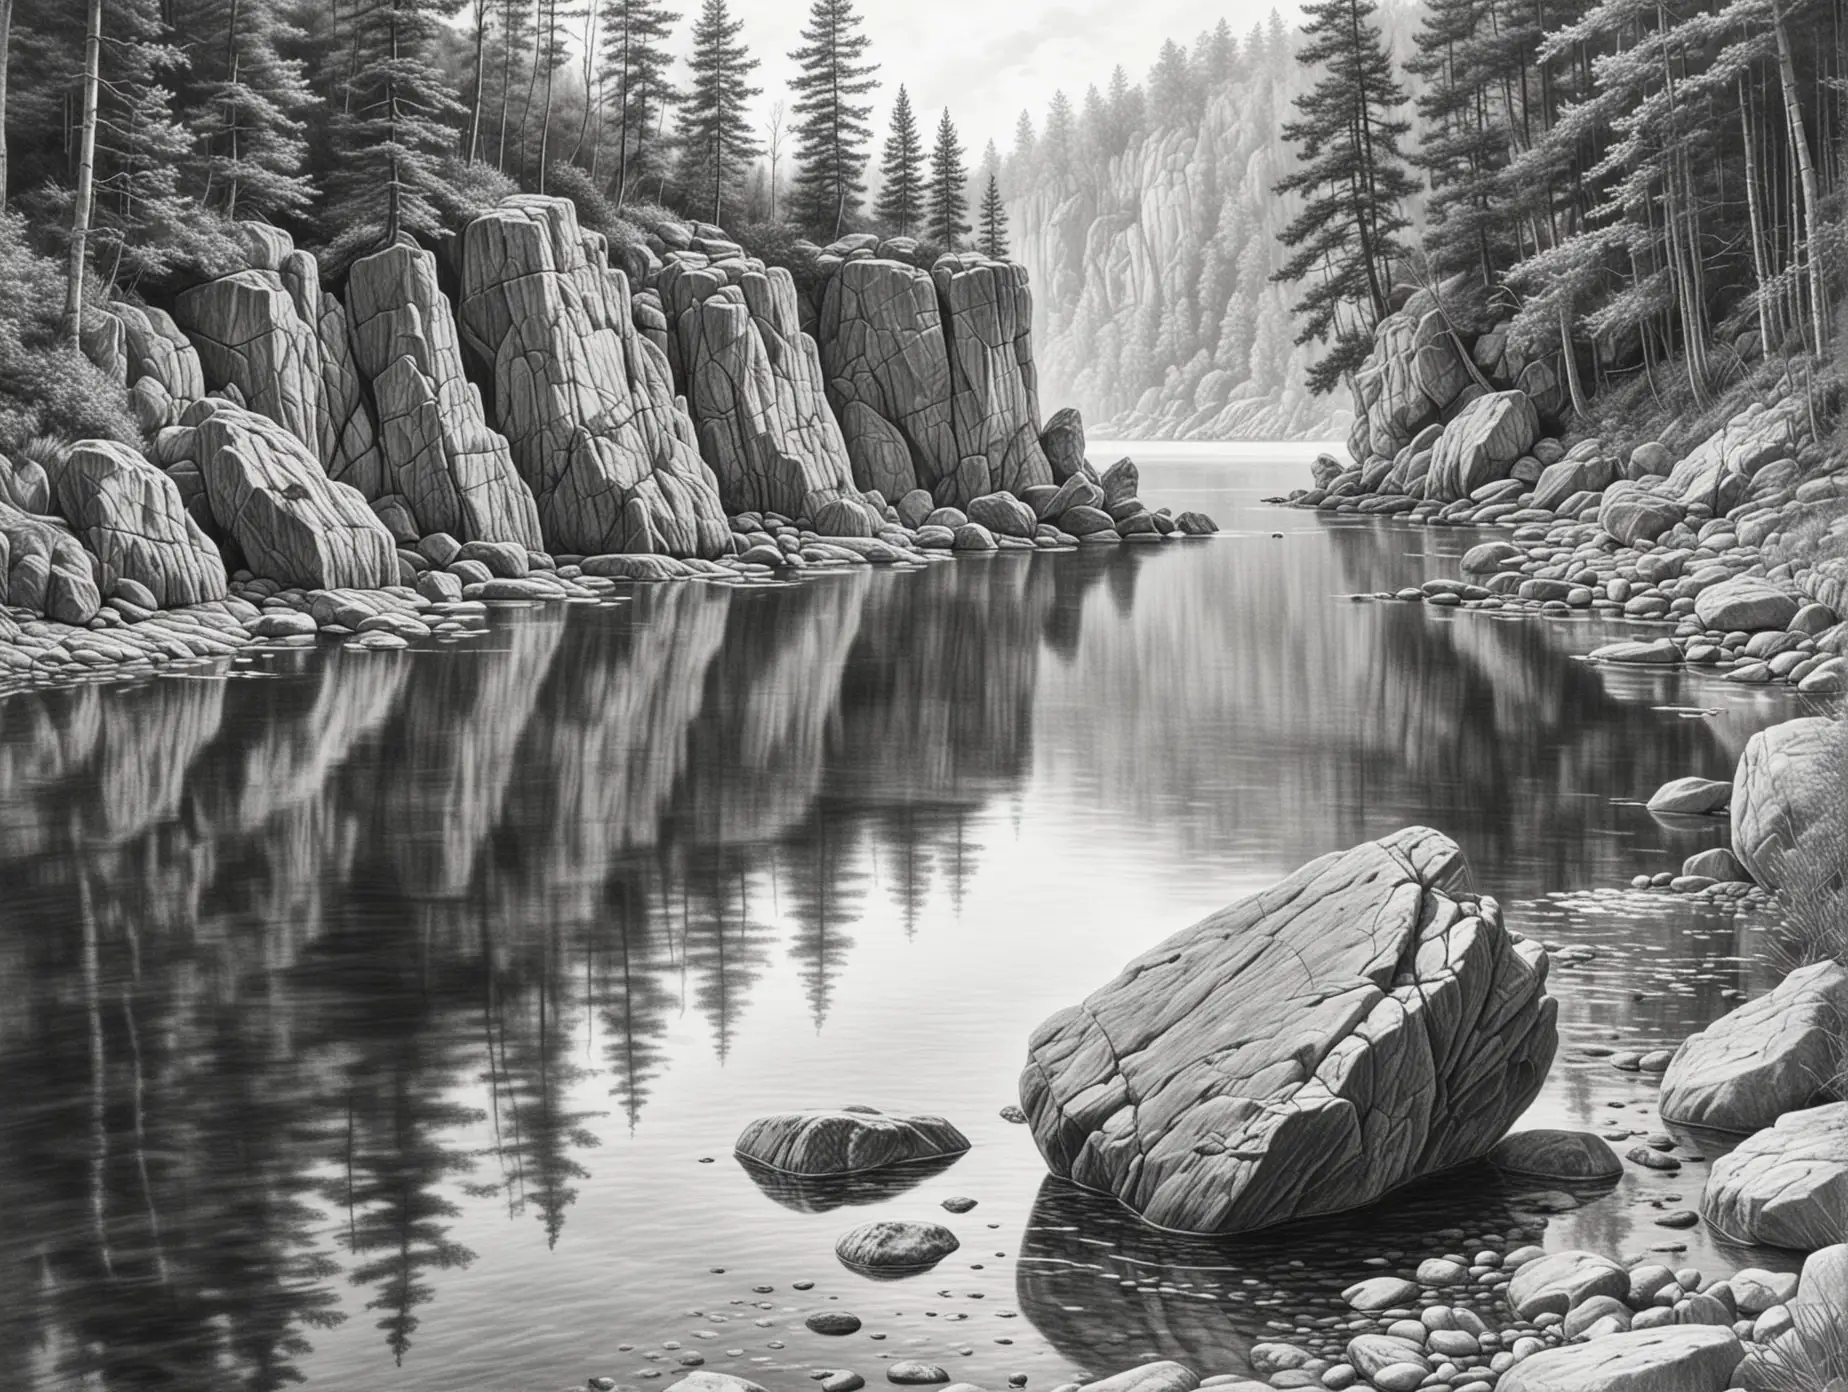 реалистичный рисунок в стиле карандашной графики  скала на берегу озера максимально приближенная к представленному фото